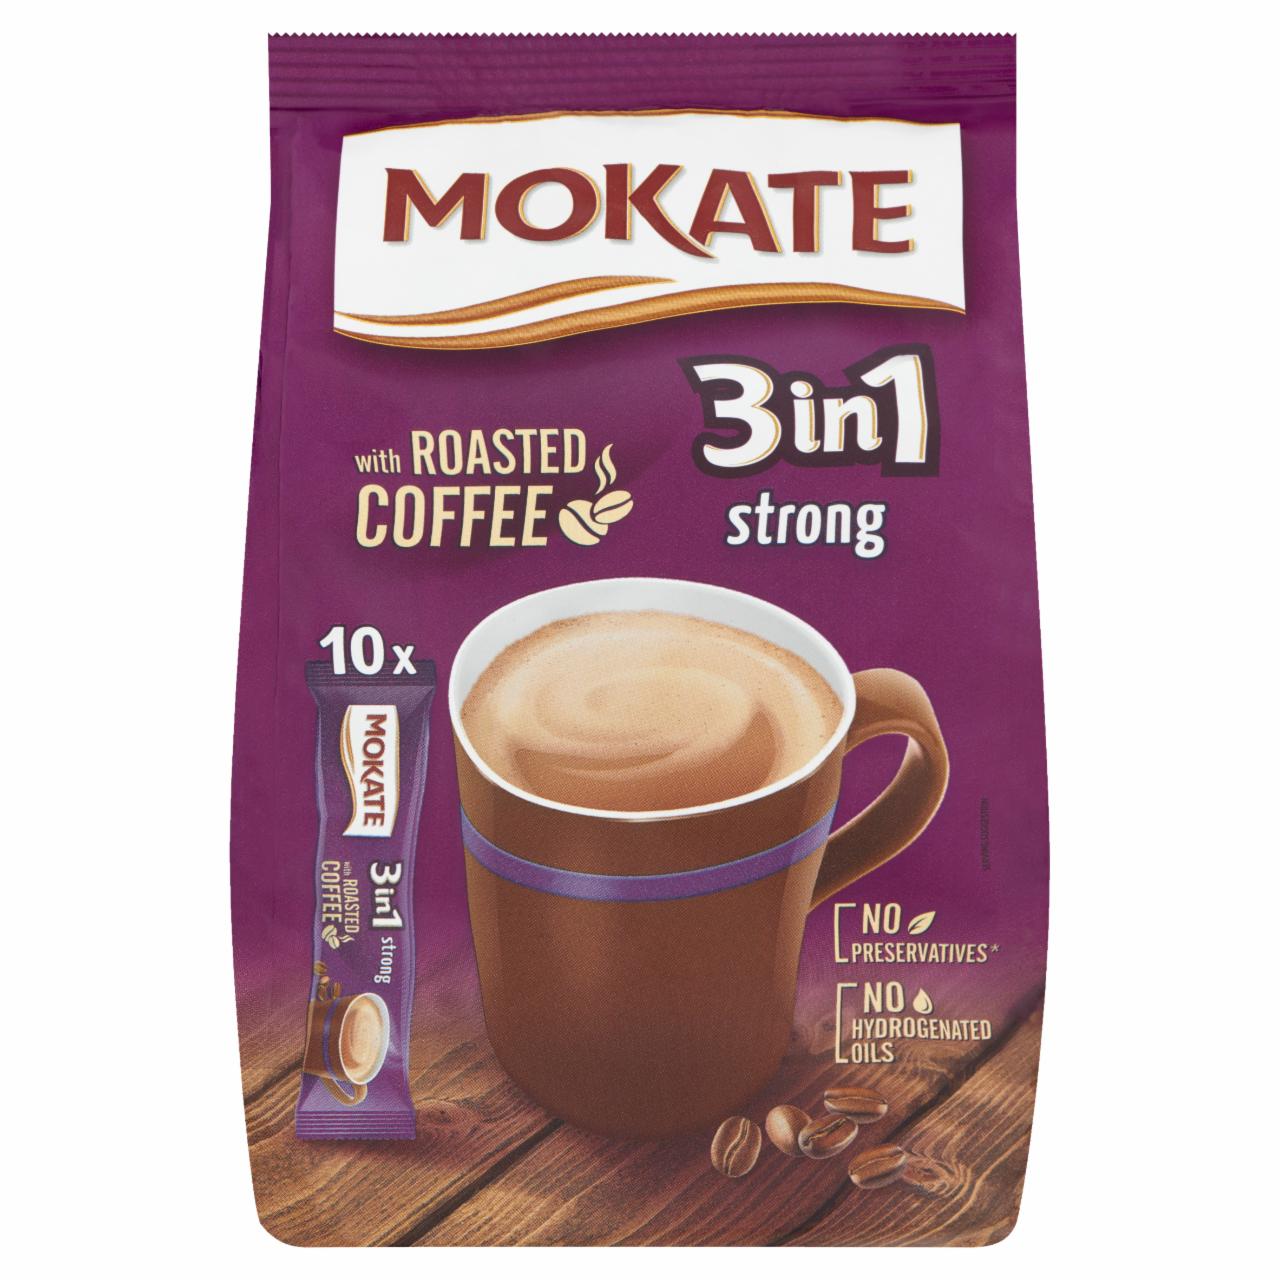 Képek - Mokate 3in1 Strong azonnal oldódó kávéspecialitás 10 db 170 g